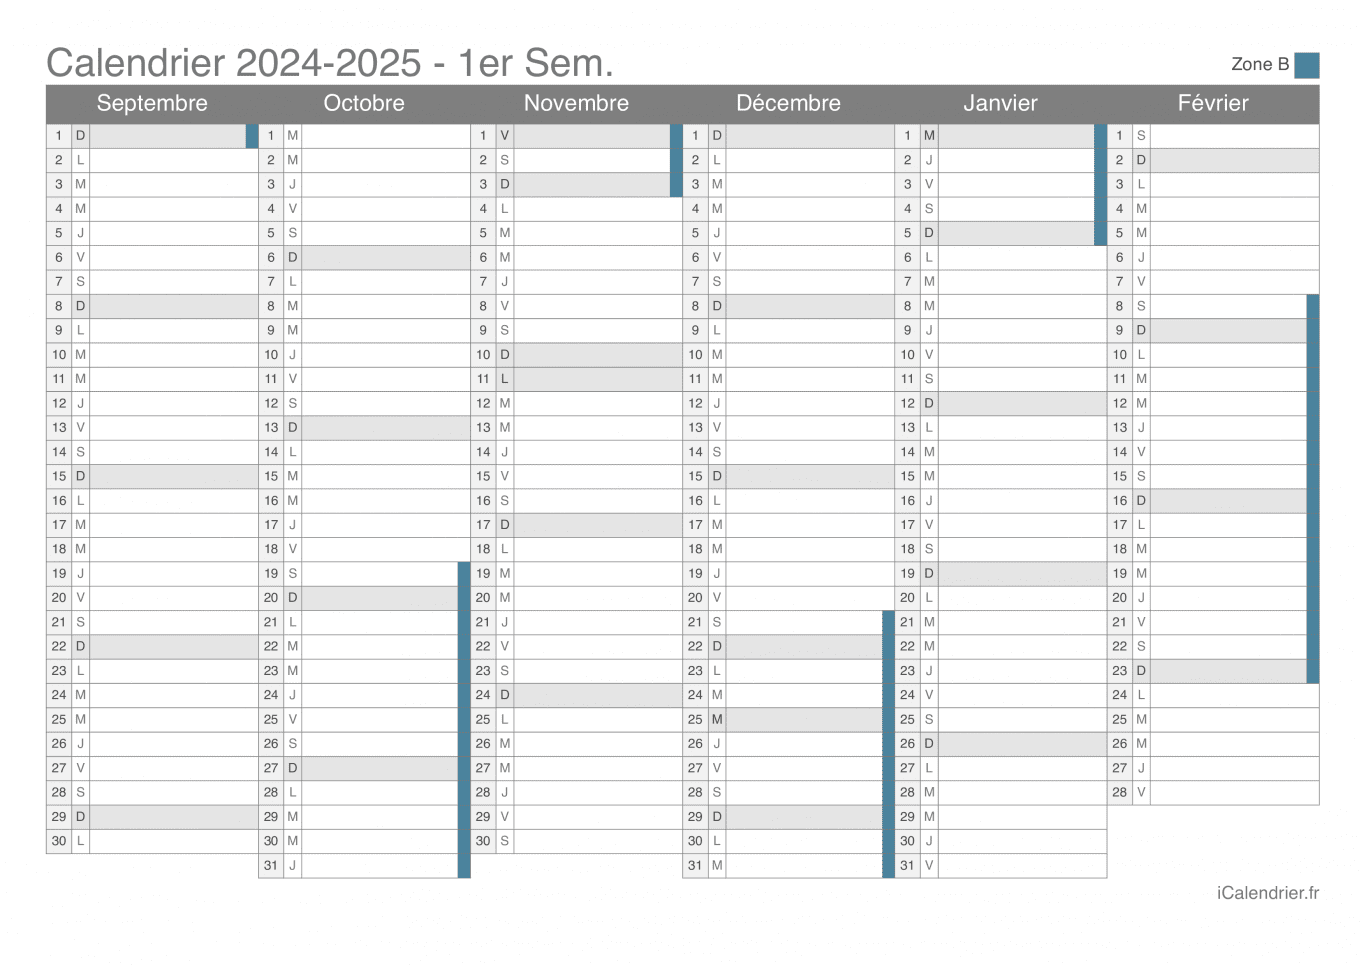 Calendrier des vacances scolaires 2024-2025 par semestre de la zone B